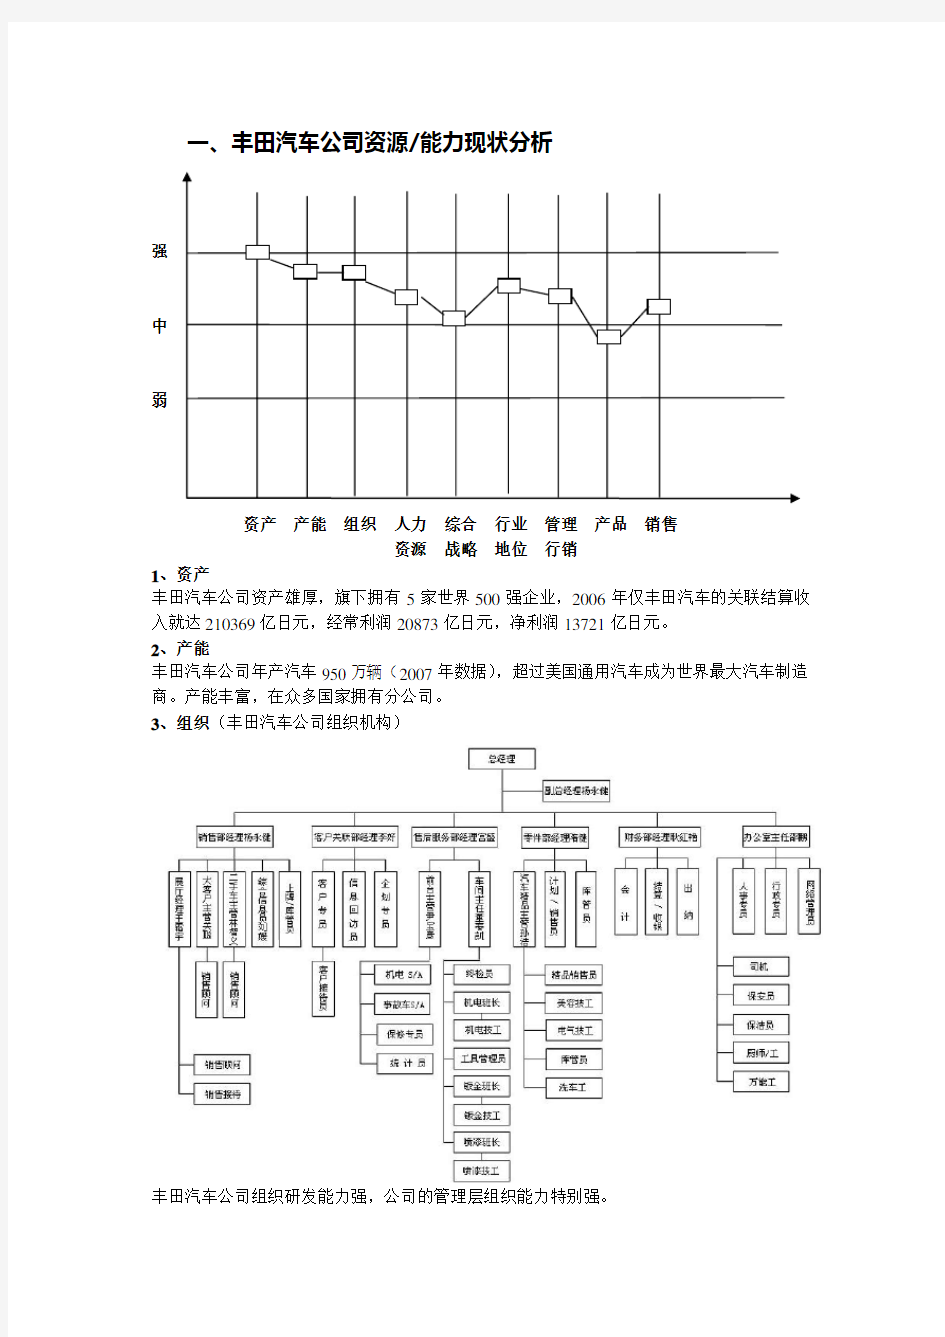 丰田汽车公司资源能力分析